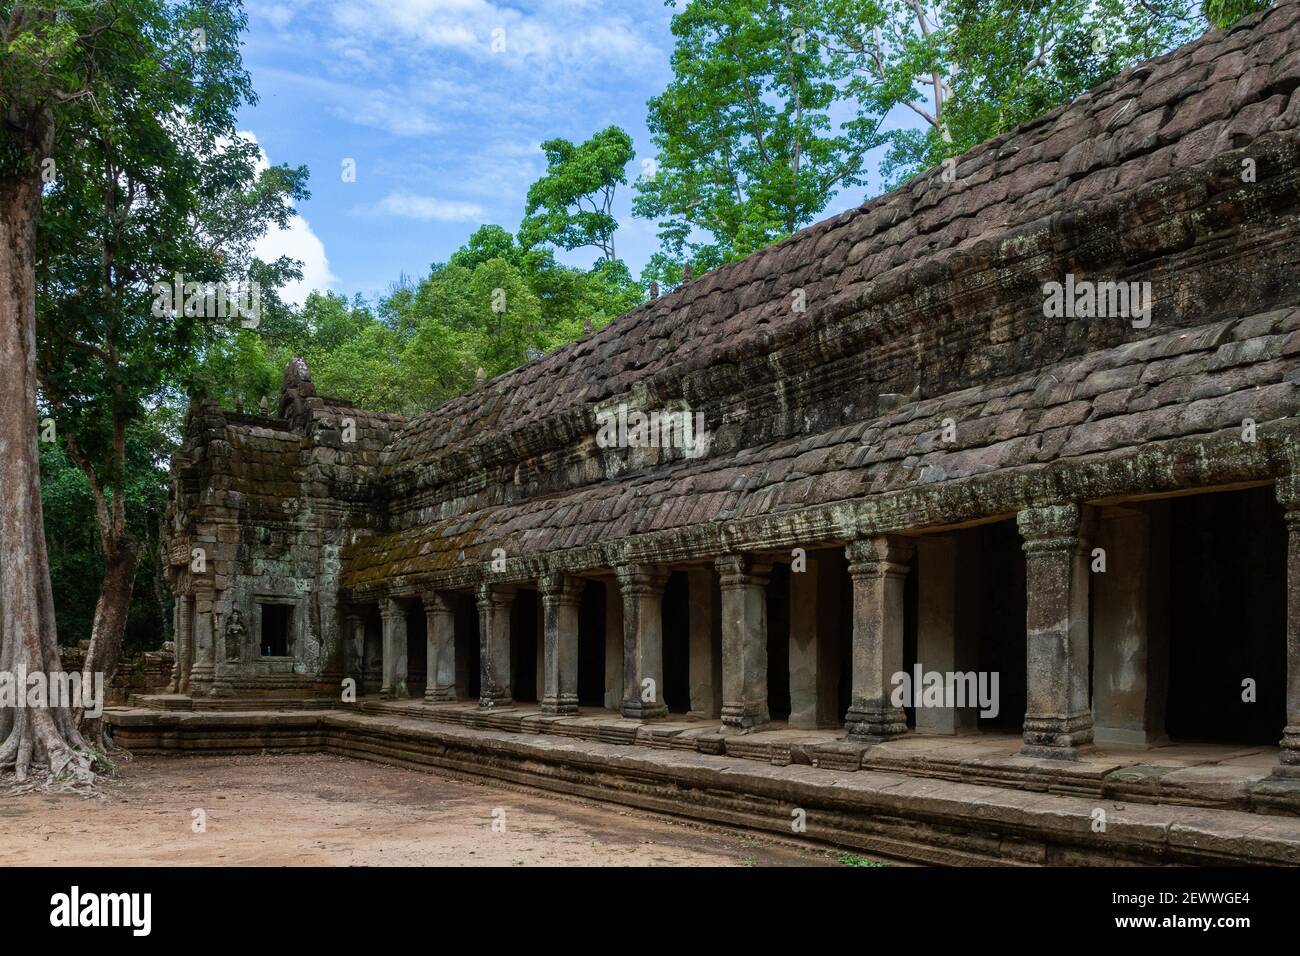 Angkor Wat, Cambodia - June 23, 2016: A long building inside Angkor Wat. Stock Photo